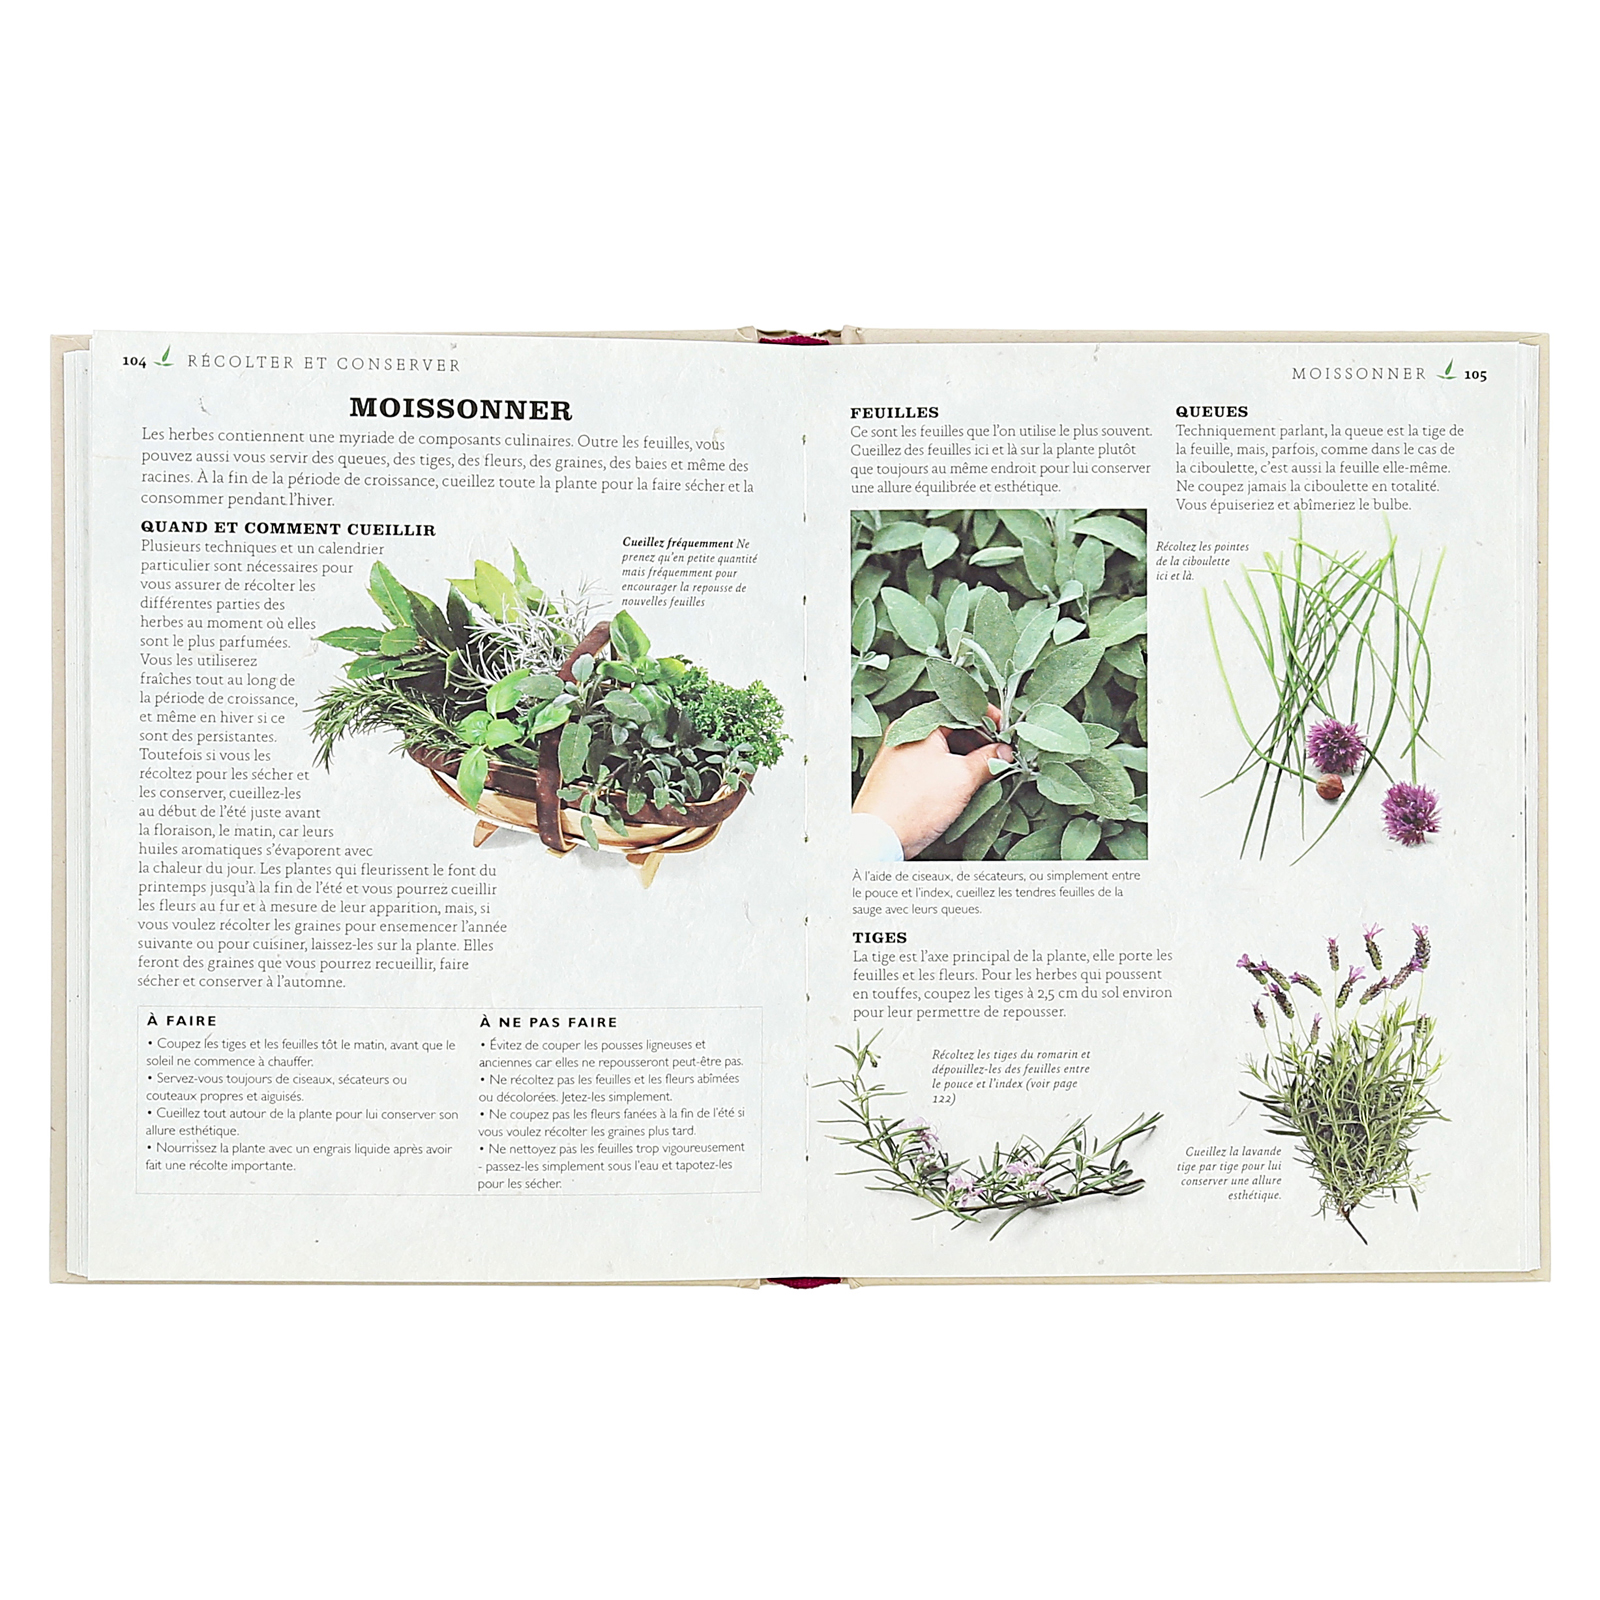 Petit guide des herbes aromatiques